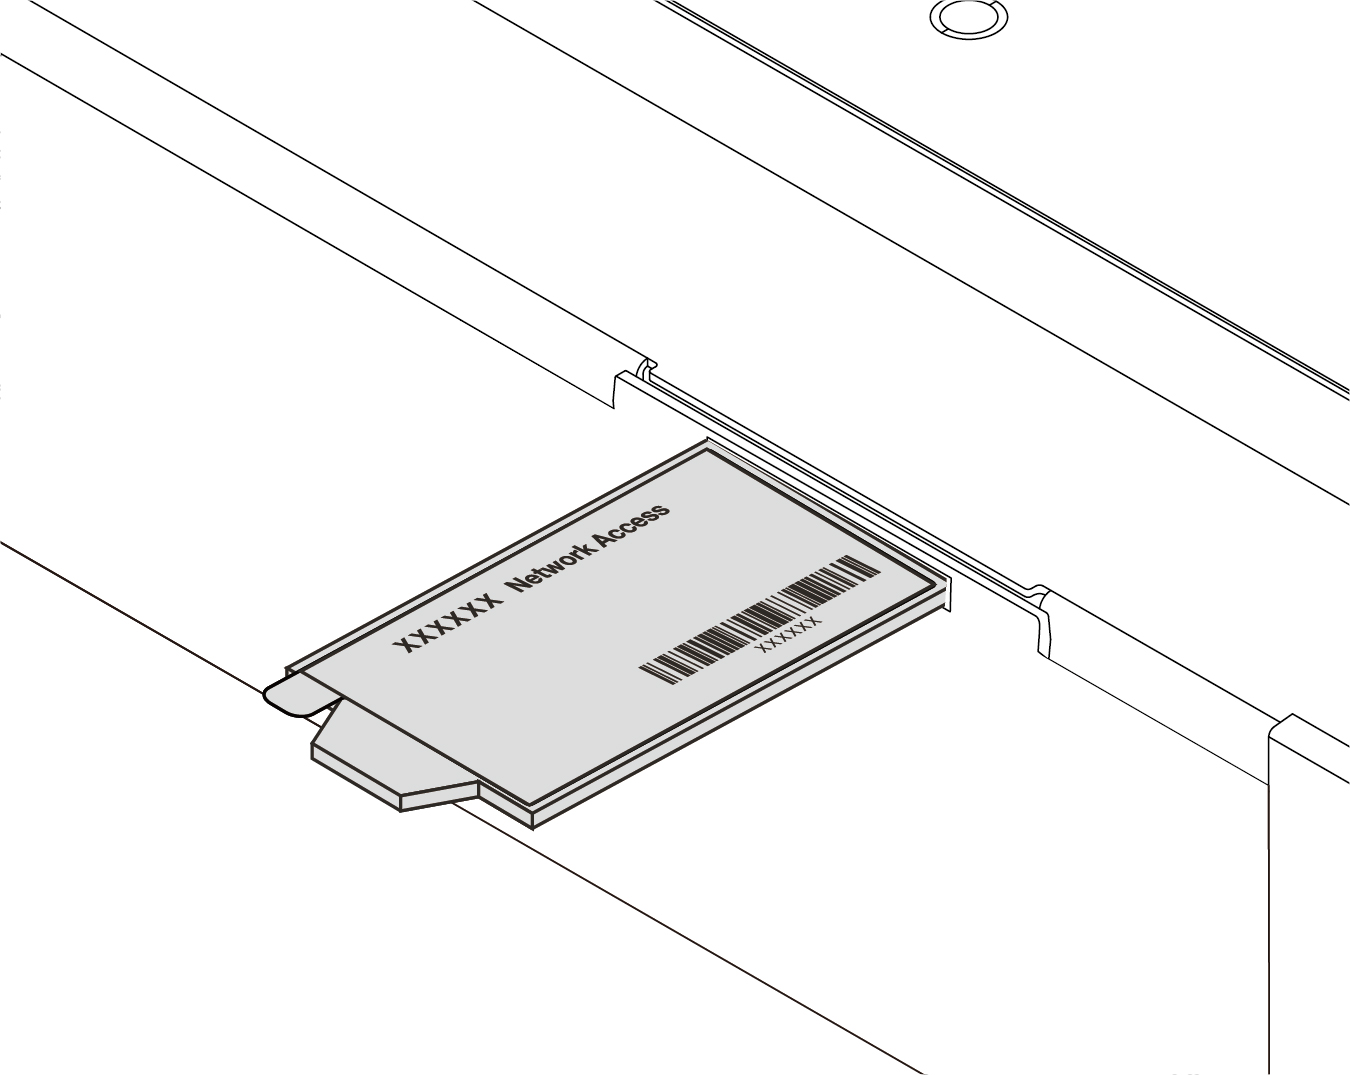 Метка с MAC-адресом на верхней стороне этикетки с информацией о пользователе